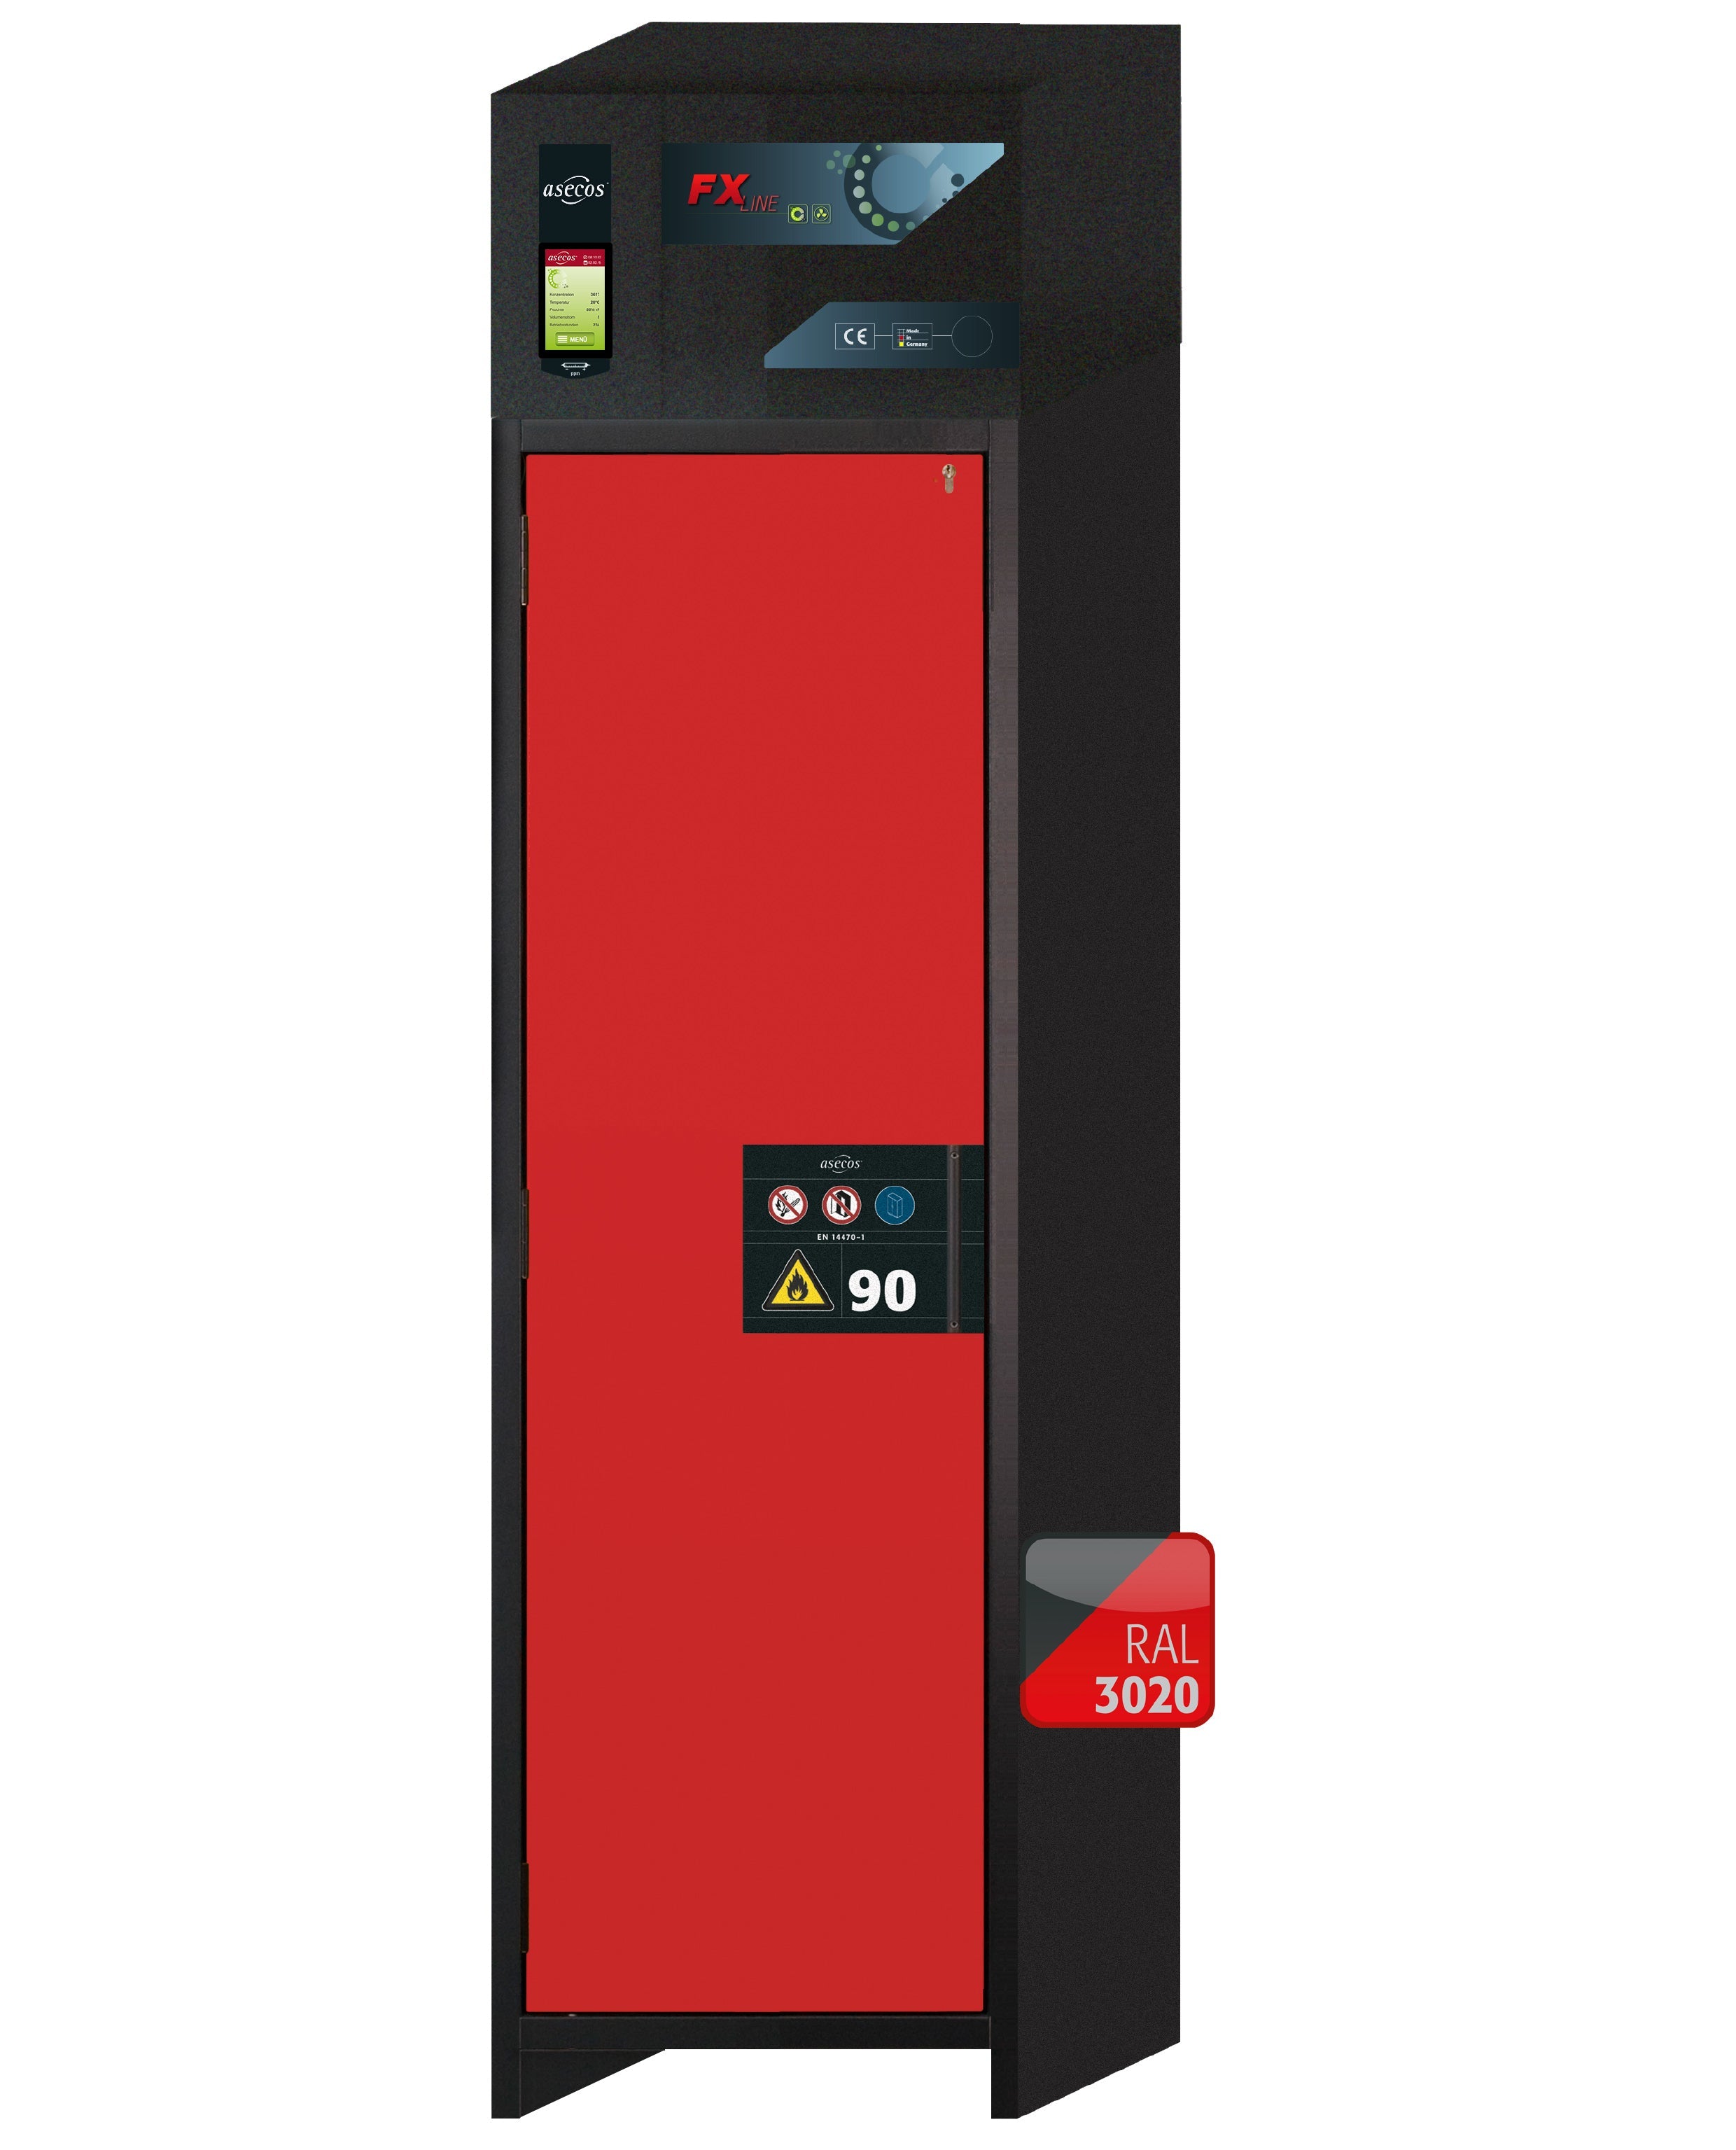 Armoire de filtration d'air de recirculation de type 90 FX-PEGASUS-90 modèle FX90.229.060.WDAC en rouge signalisation RAL 3020 avec 4x étagères standard (acier inoxydable 1.4301)